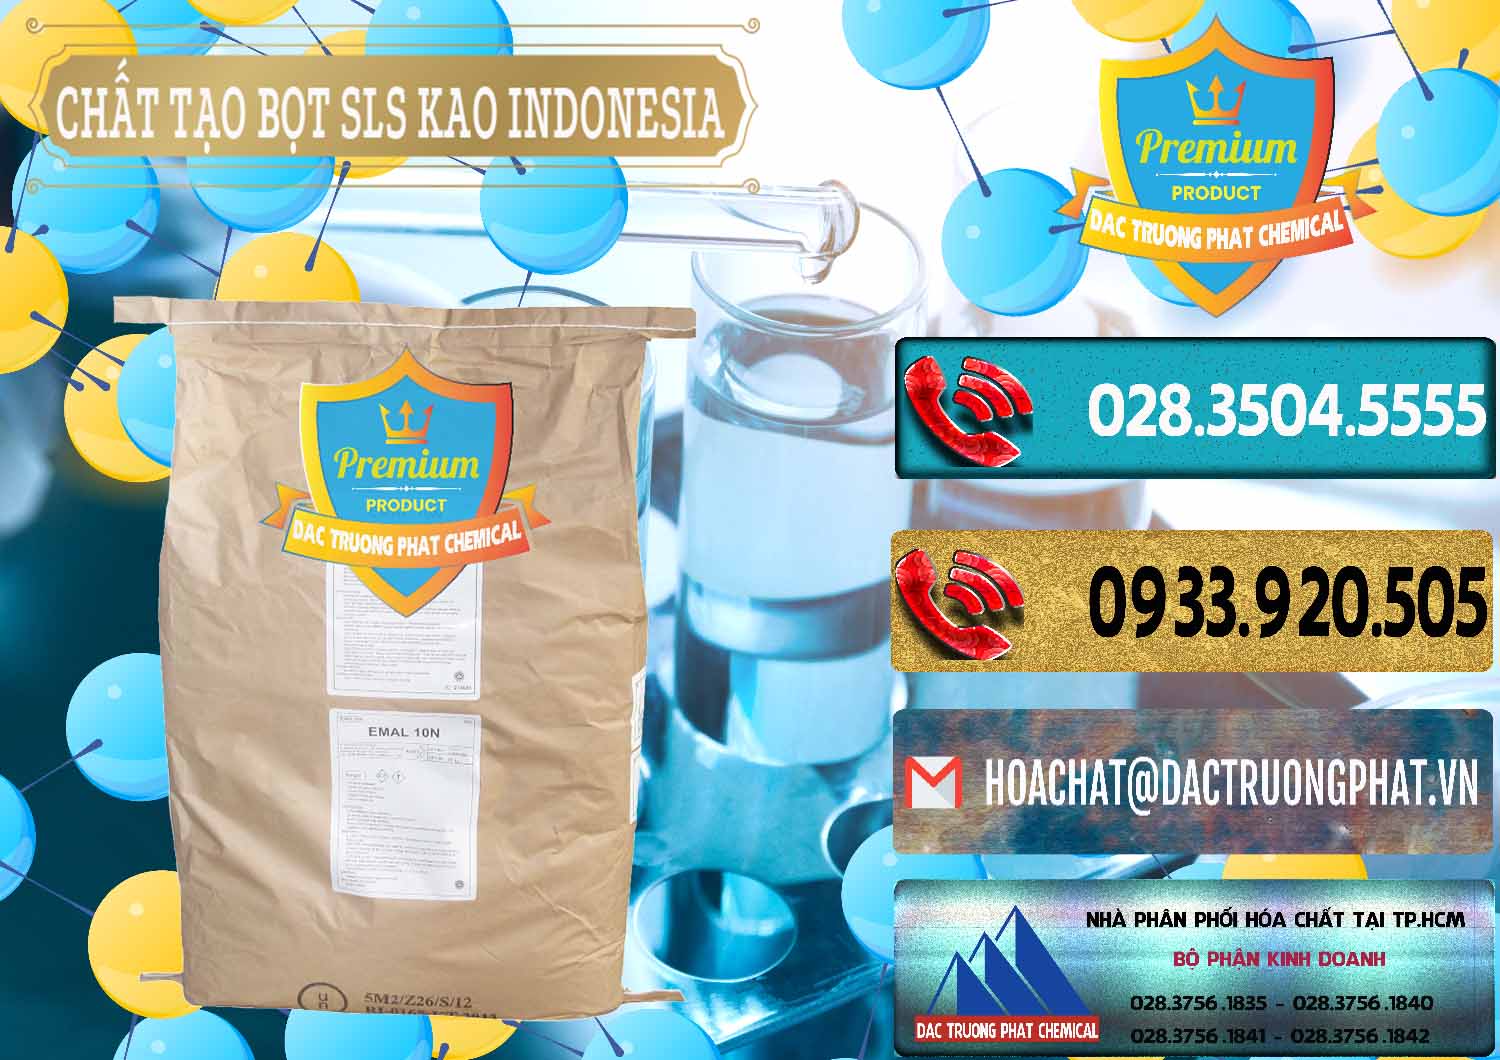 Công ty bán _ cung cấp Chất Tạo Bọt SLS - Sodium Lauryl Sulfate EMAL 10N KAO Indonesia - 0047 - Nơi chuyên cung cấp và nhập khẩu hóa chất tại TP.HCM - hoachatdetnhuom.com